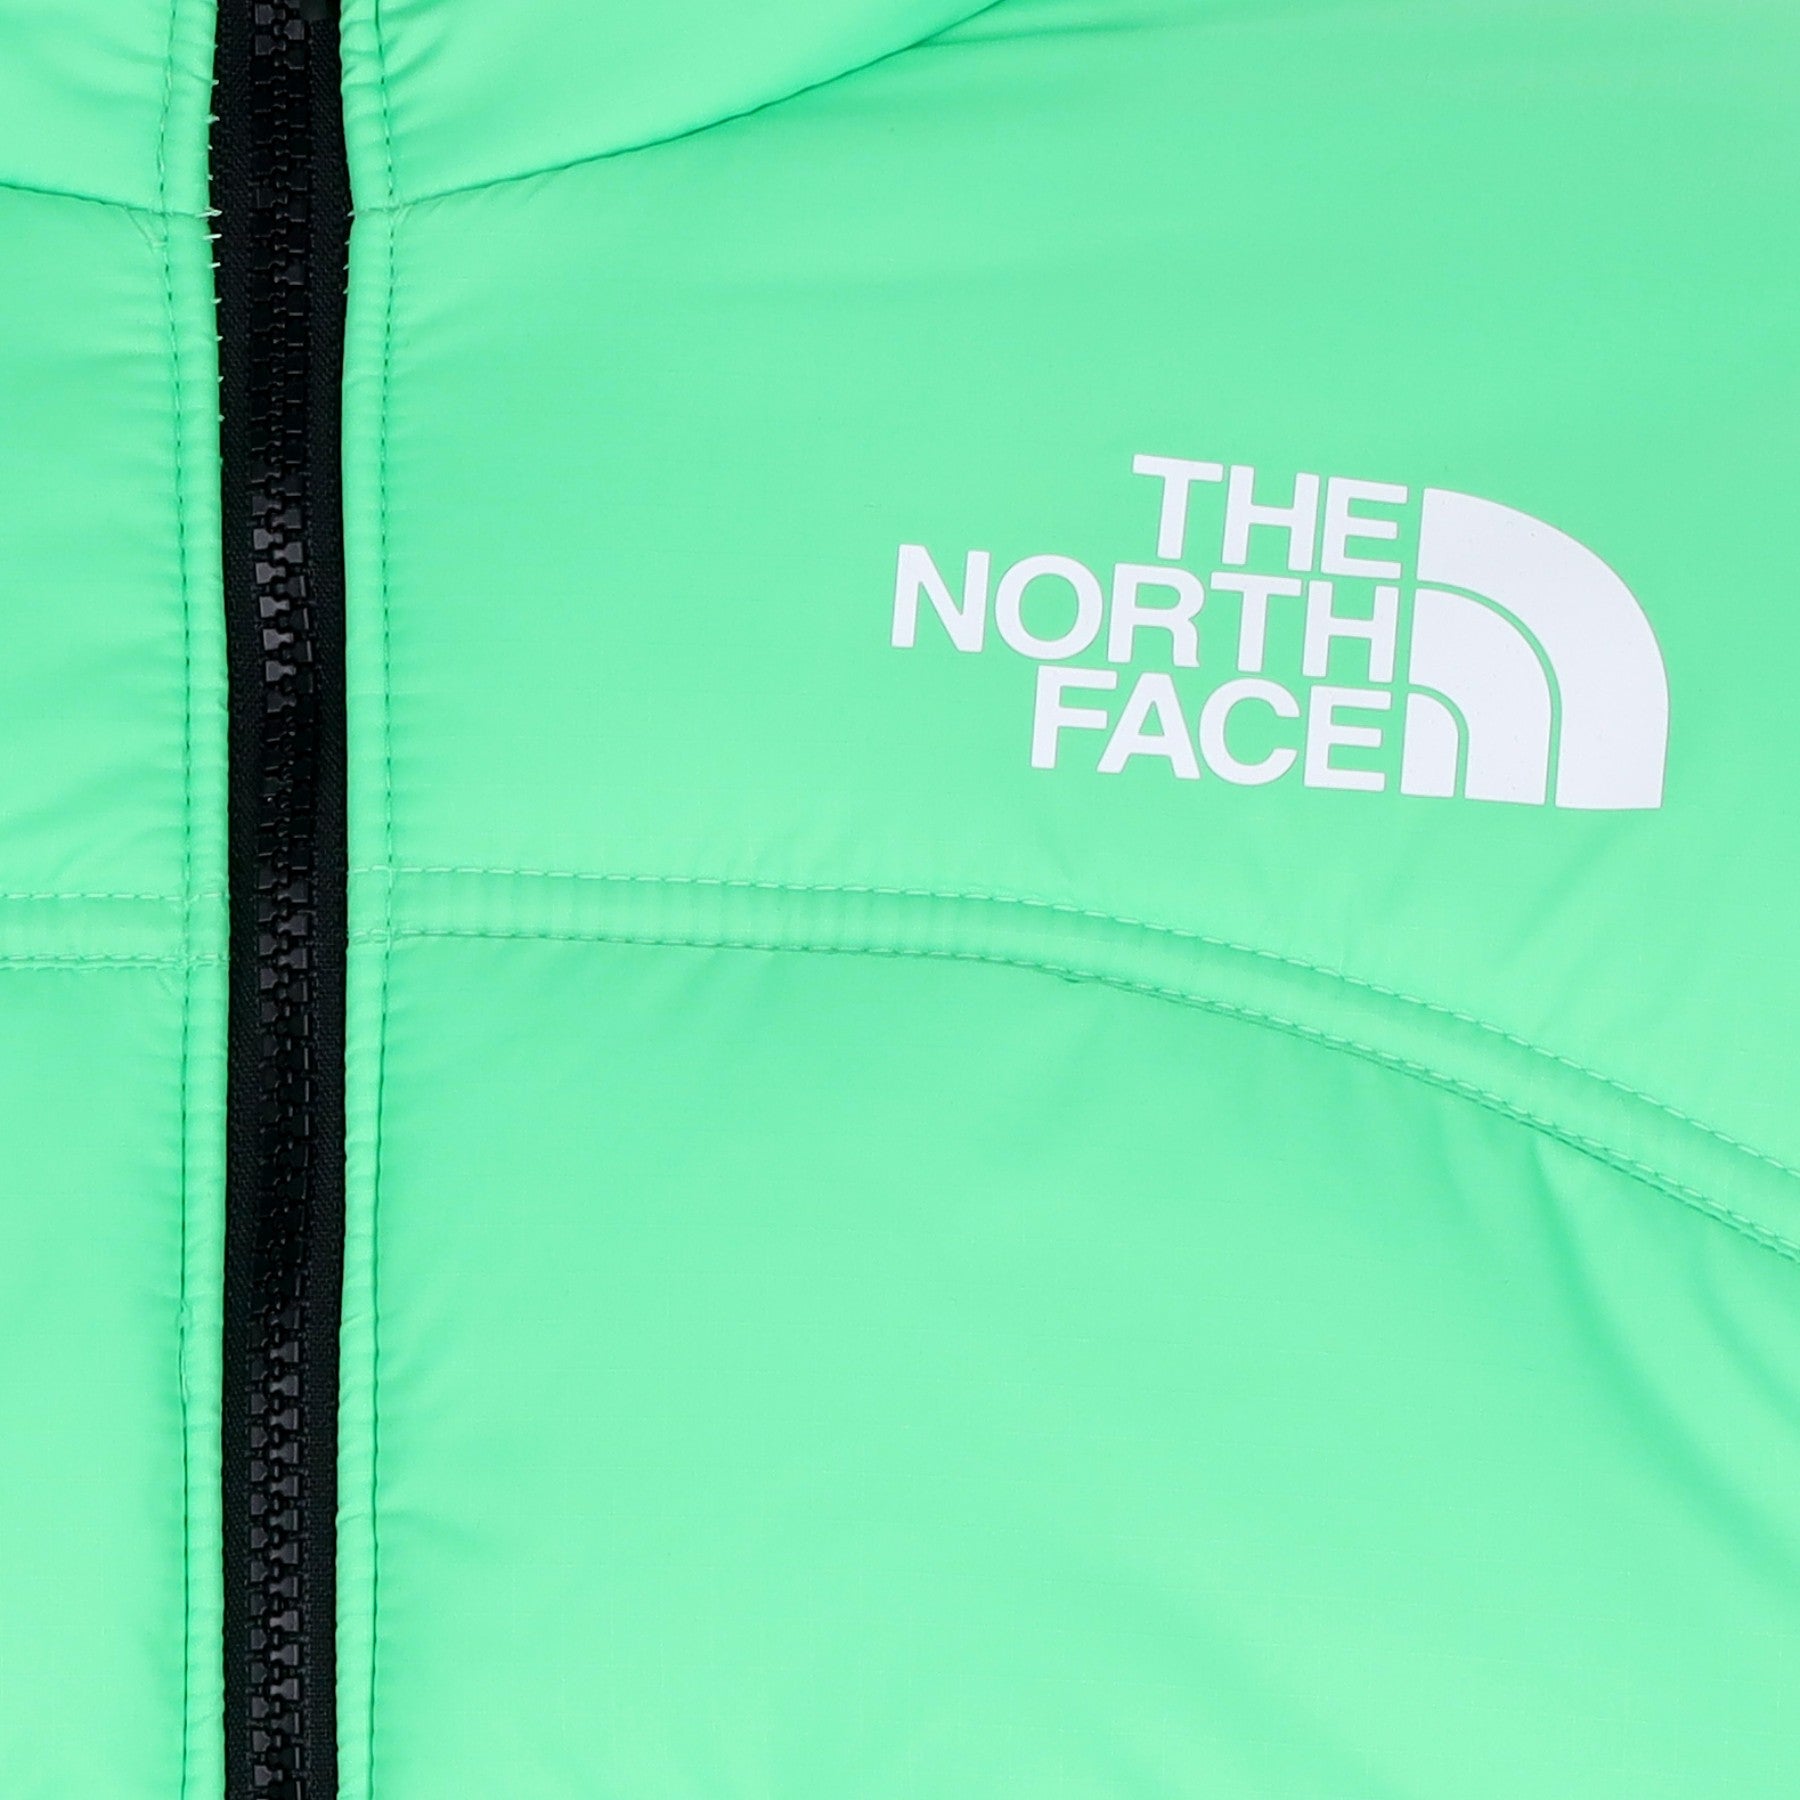 The North Face, Piumino Uomo Jacket 2000, 